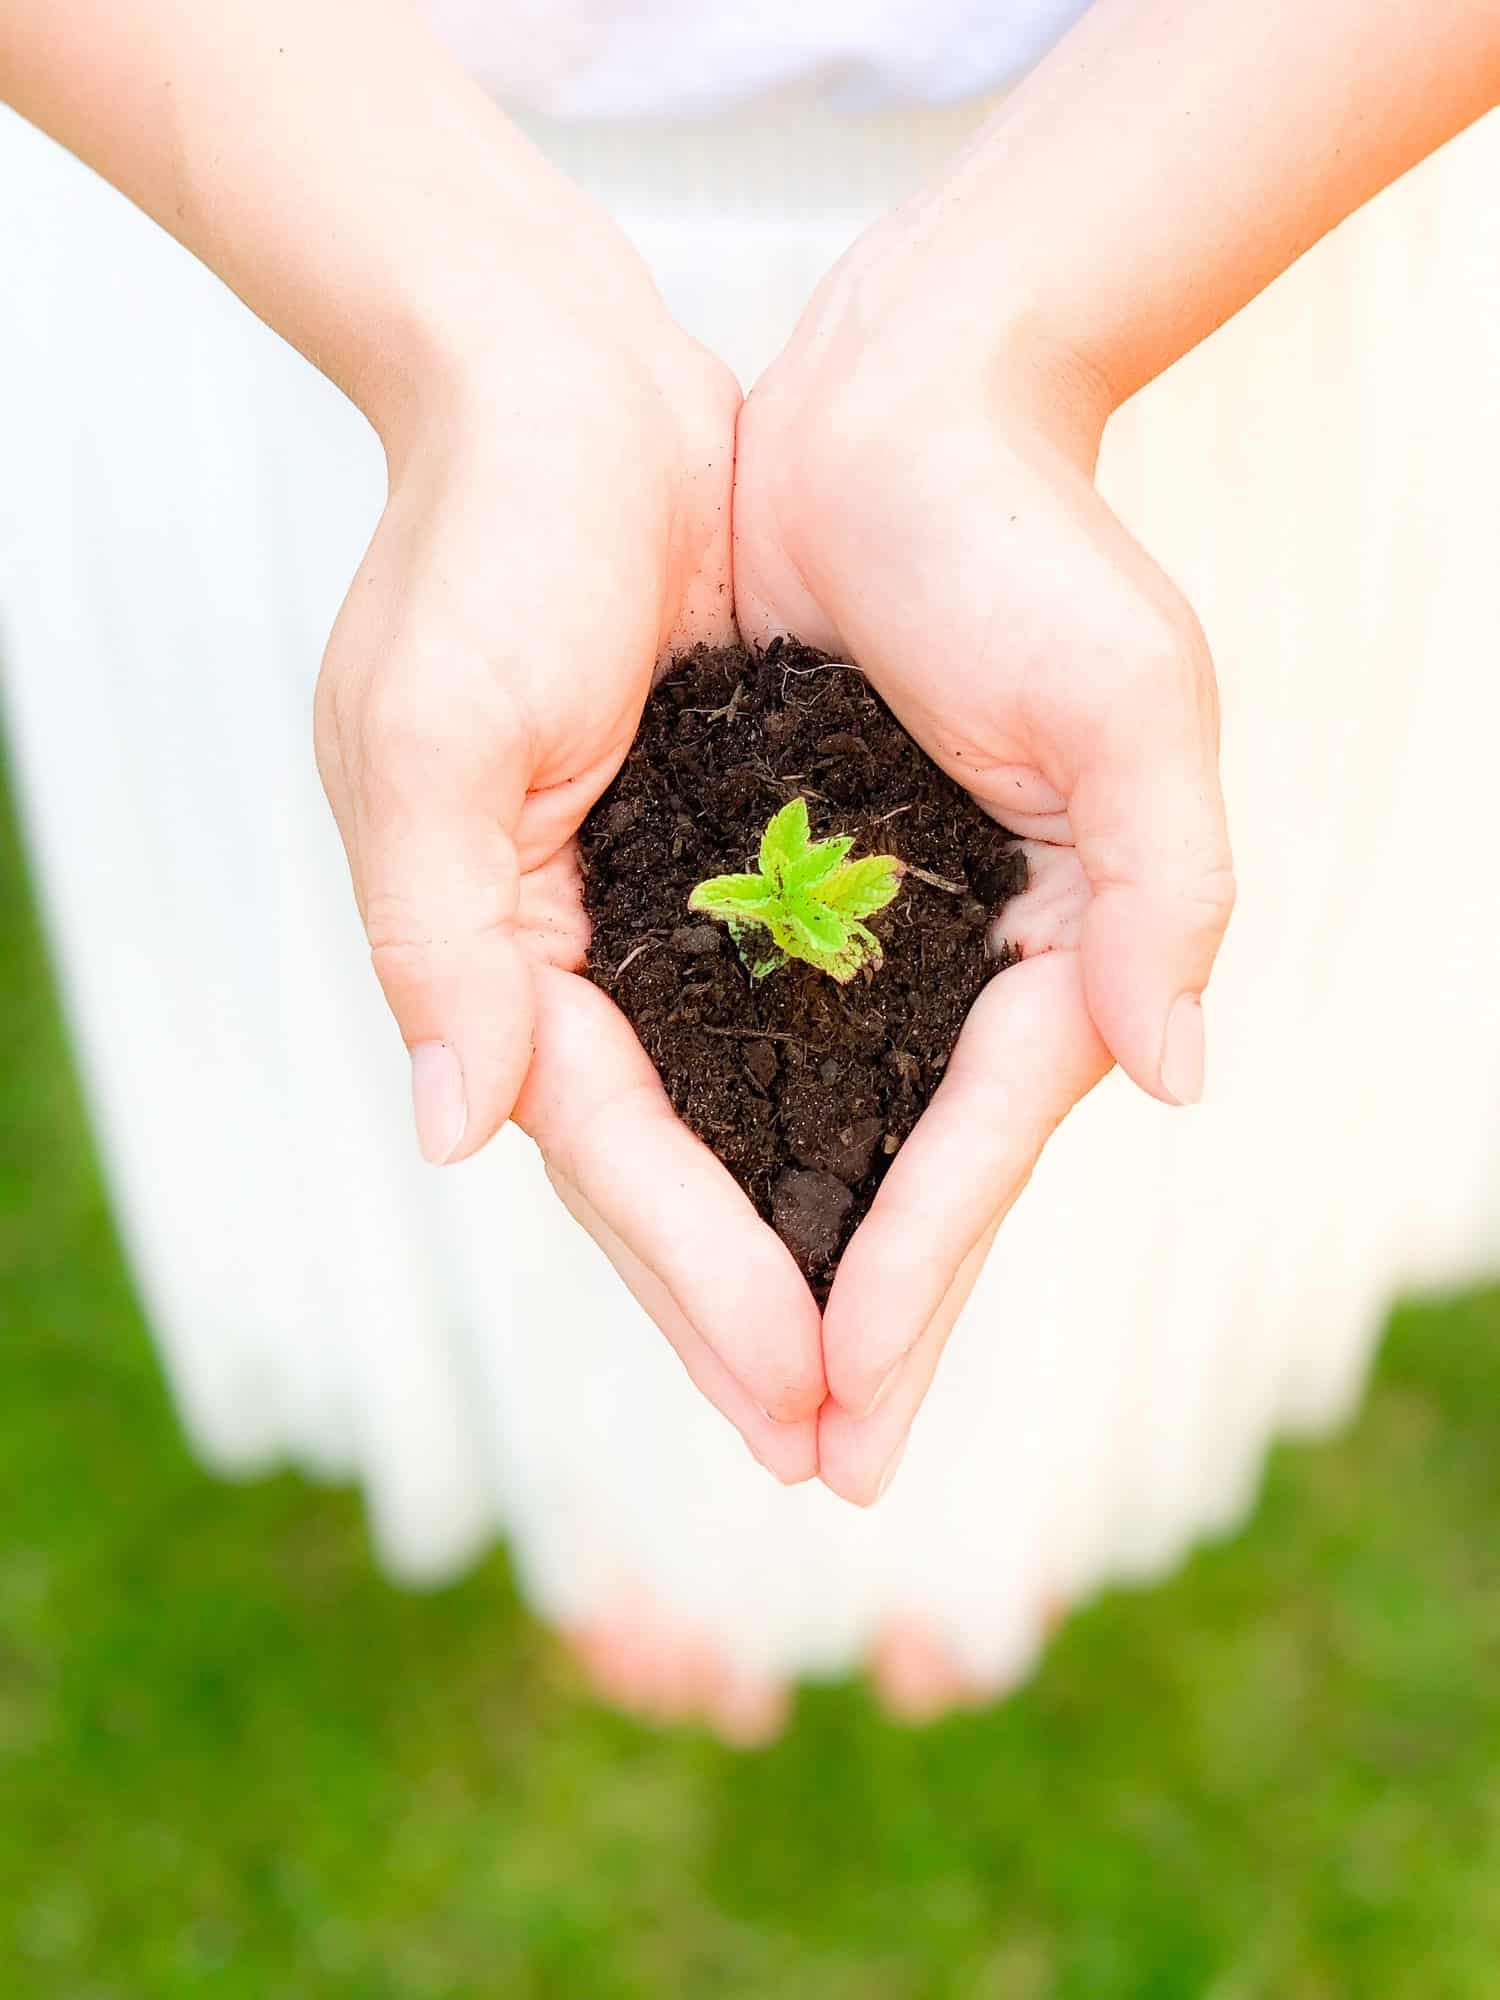 Le jardinage en permaculture : un choix éthique et durable pour un potager  responsable - By Sun Maison